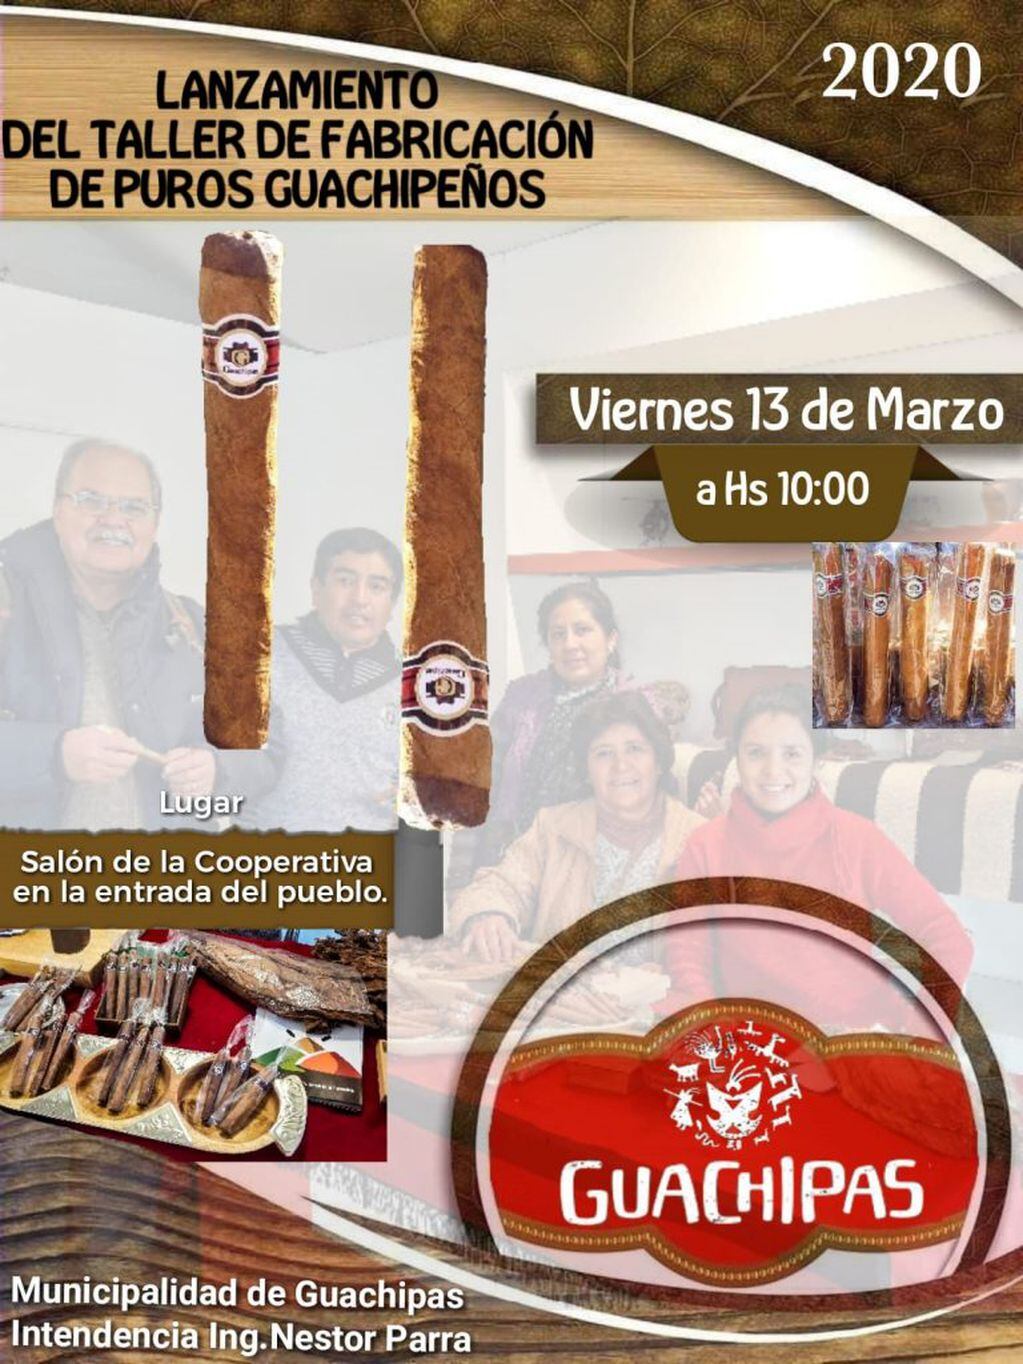 Taller de fabricación de puros guachipeños (Facebook Prensa Guachipas La Viña)